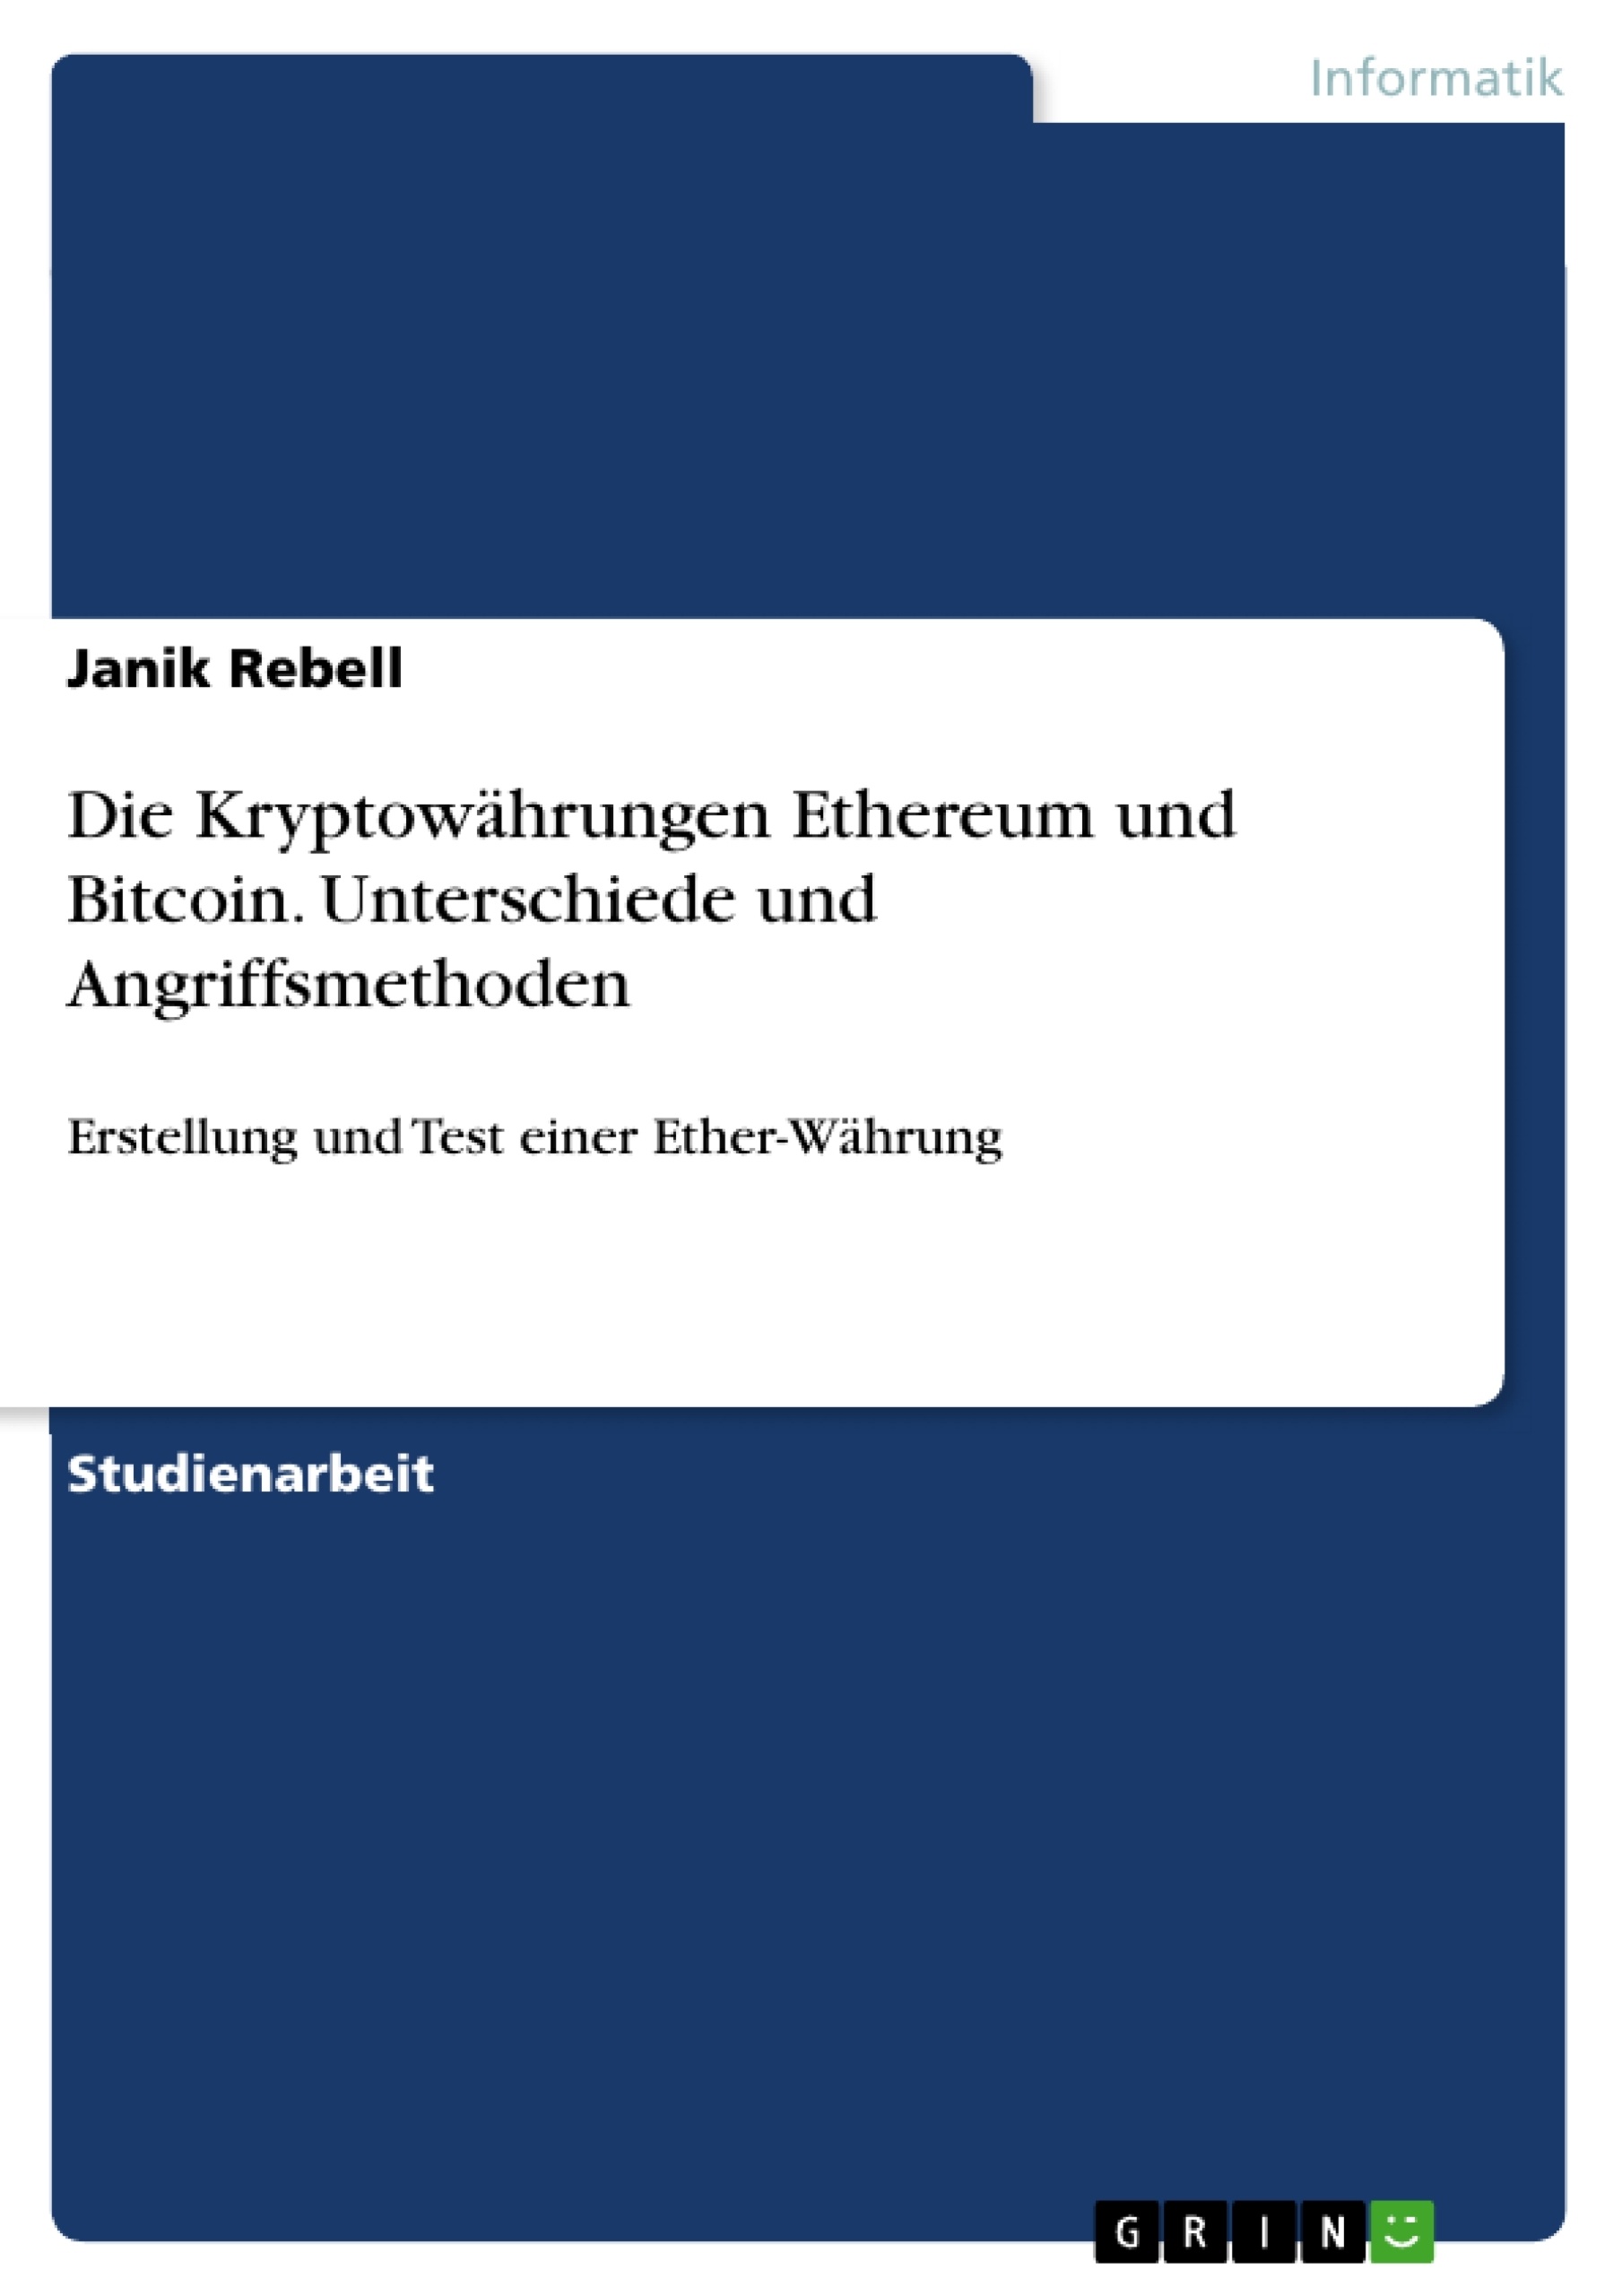 Título: Die Kryptowährungen Ethereum und Bitcoin. Unterschiede und Angriffsmethoden